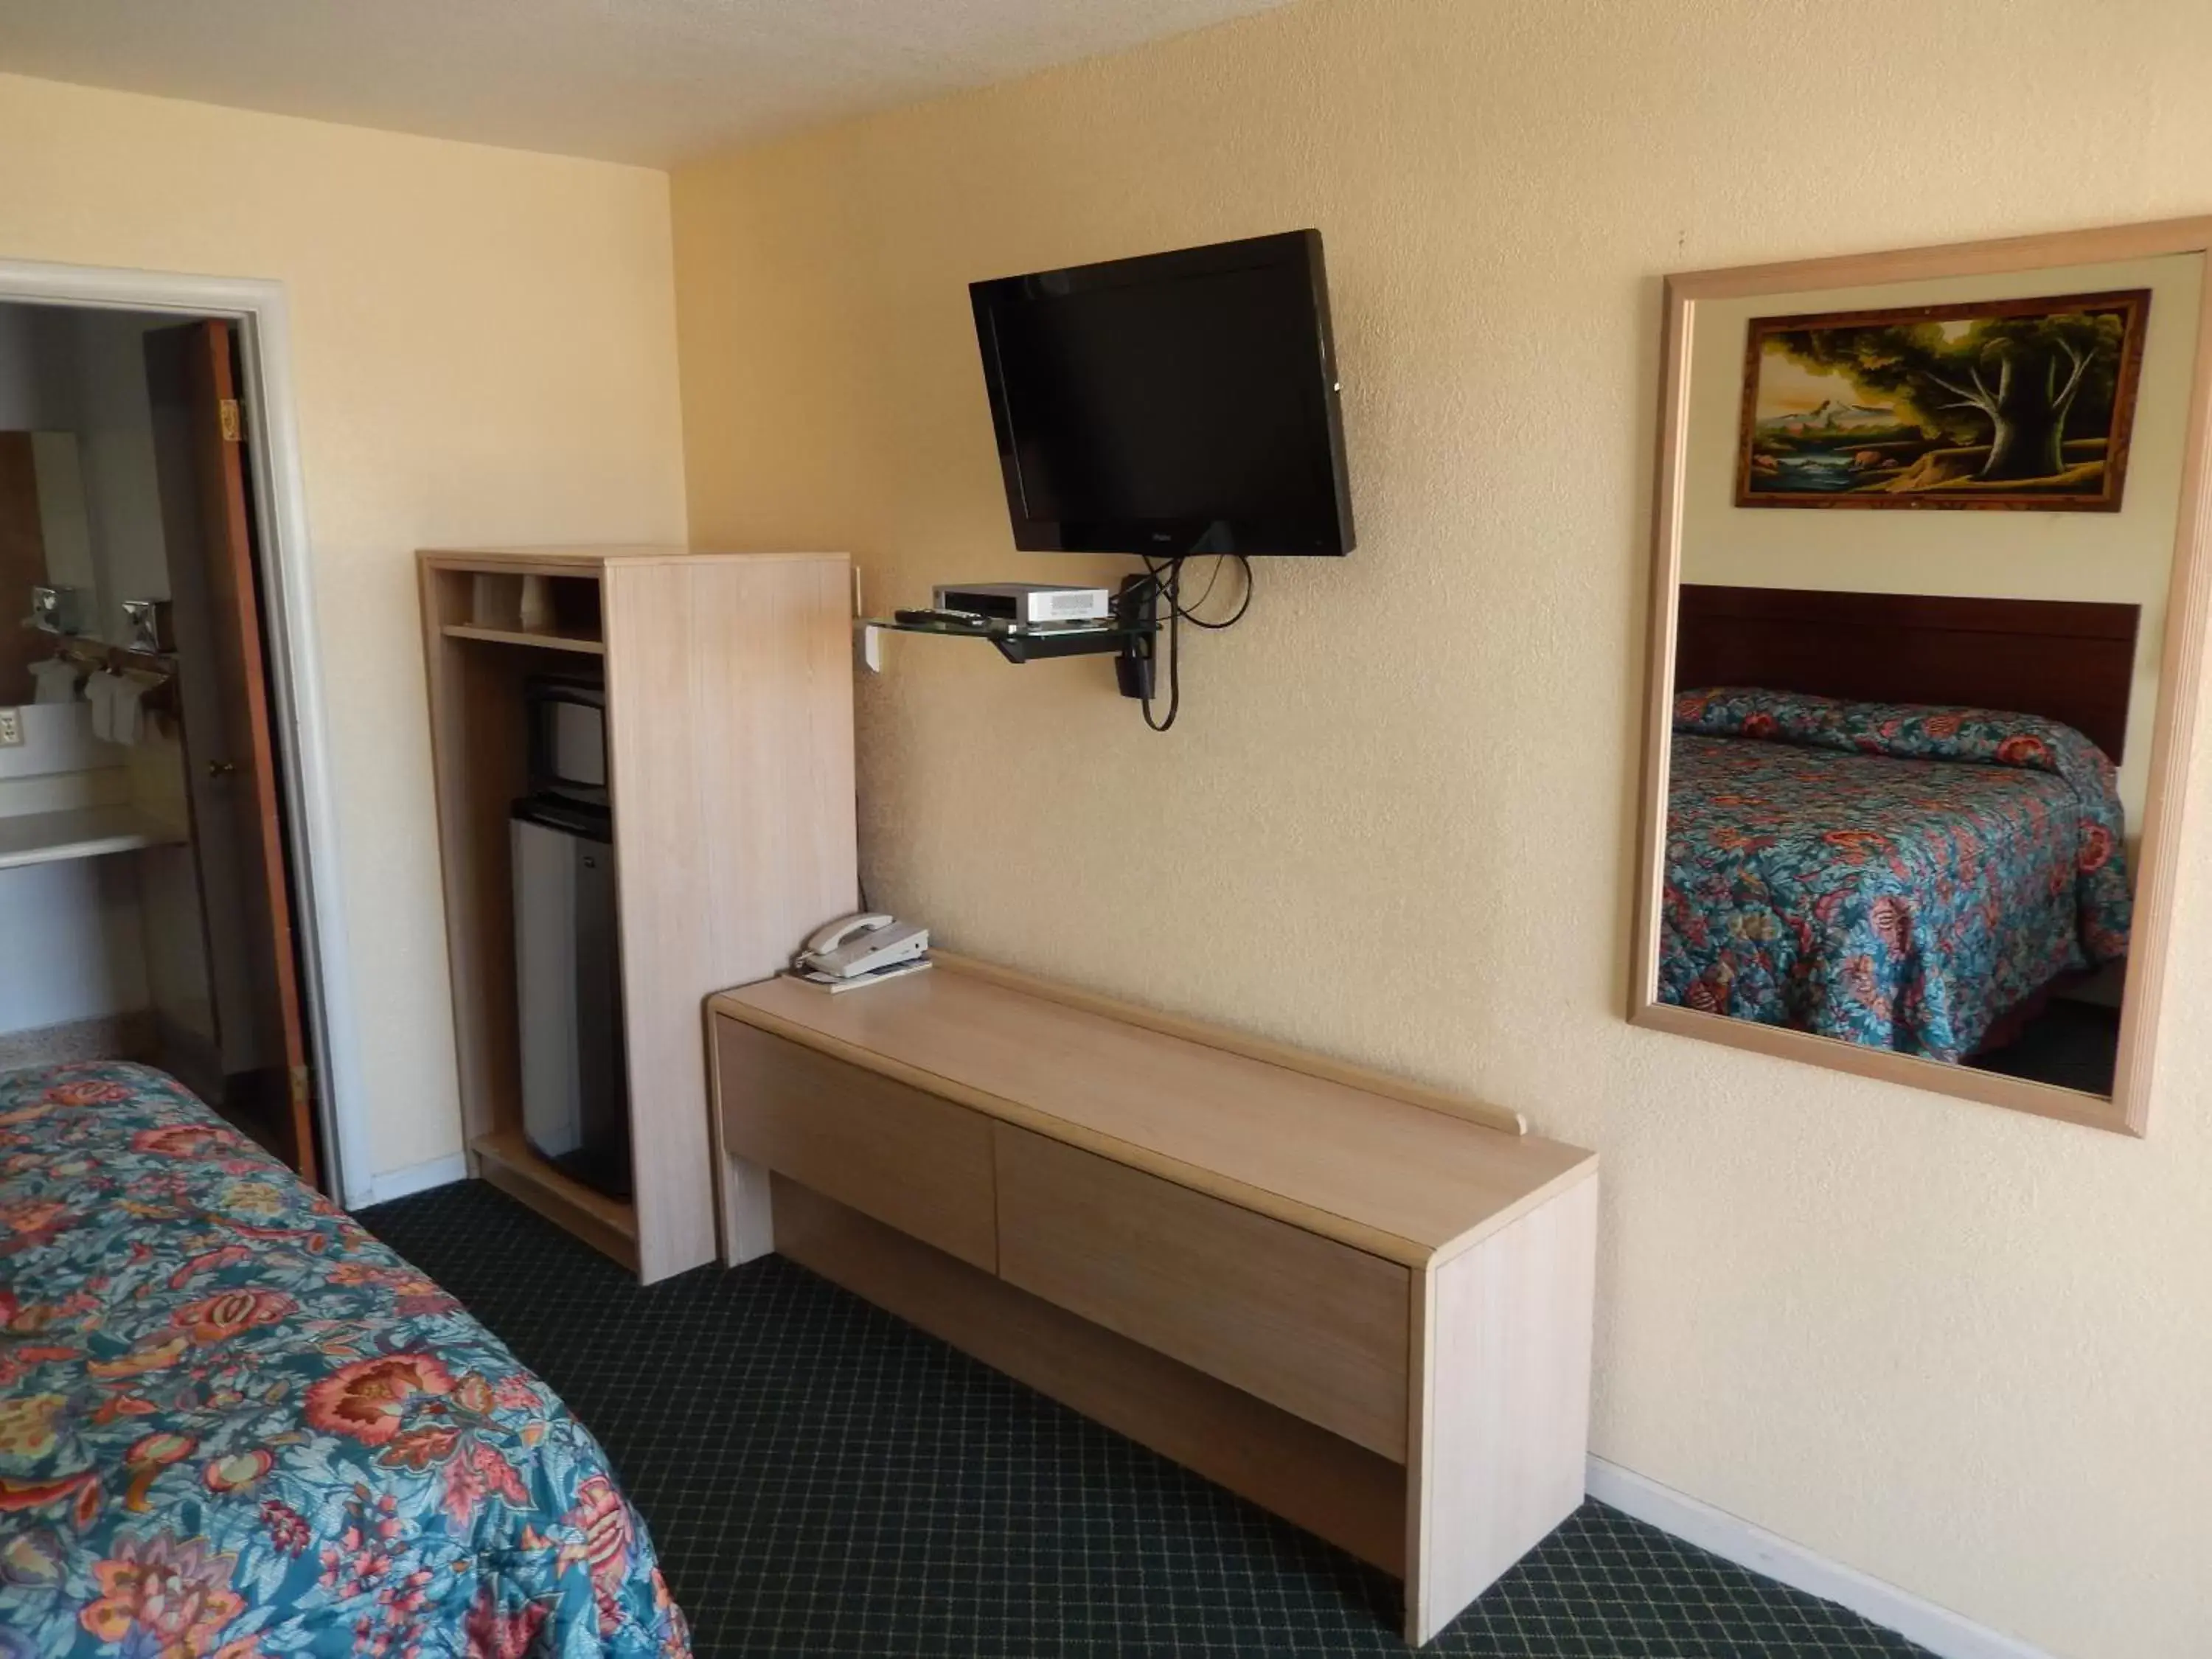 Bedroom, TV/Entertainment Center in Townsman Motel